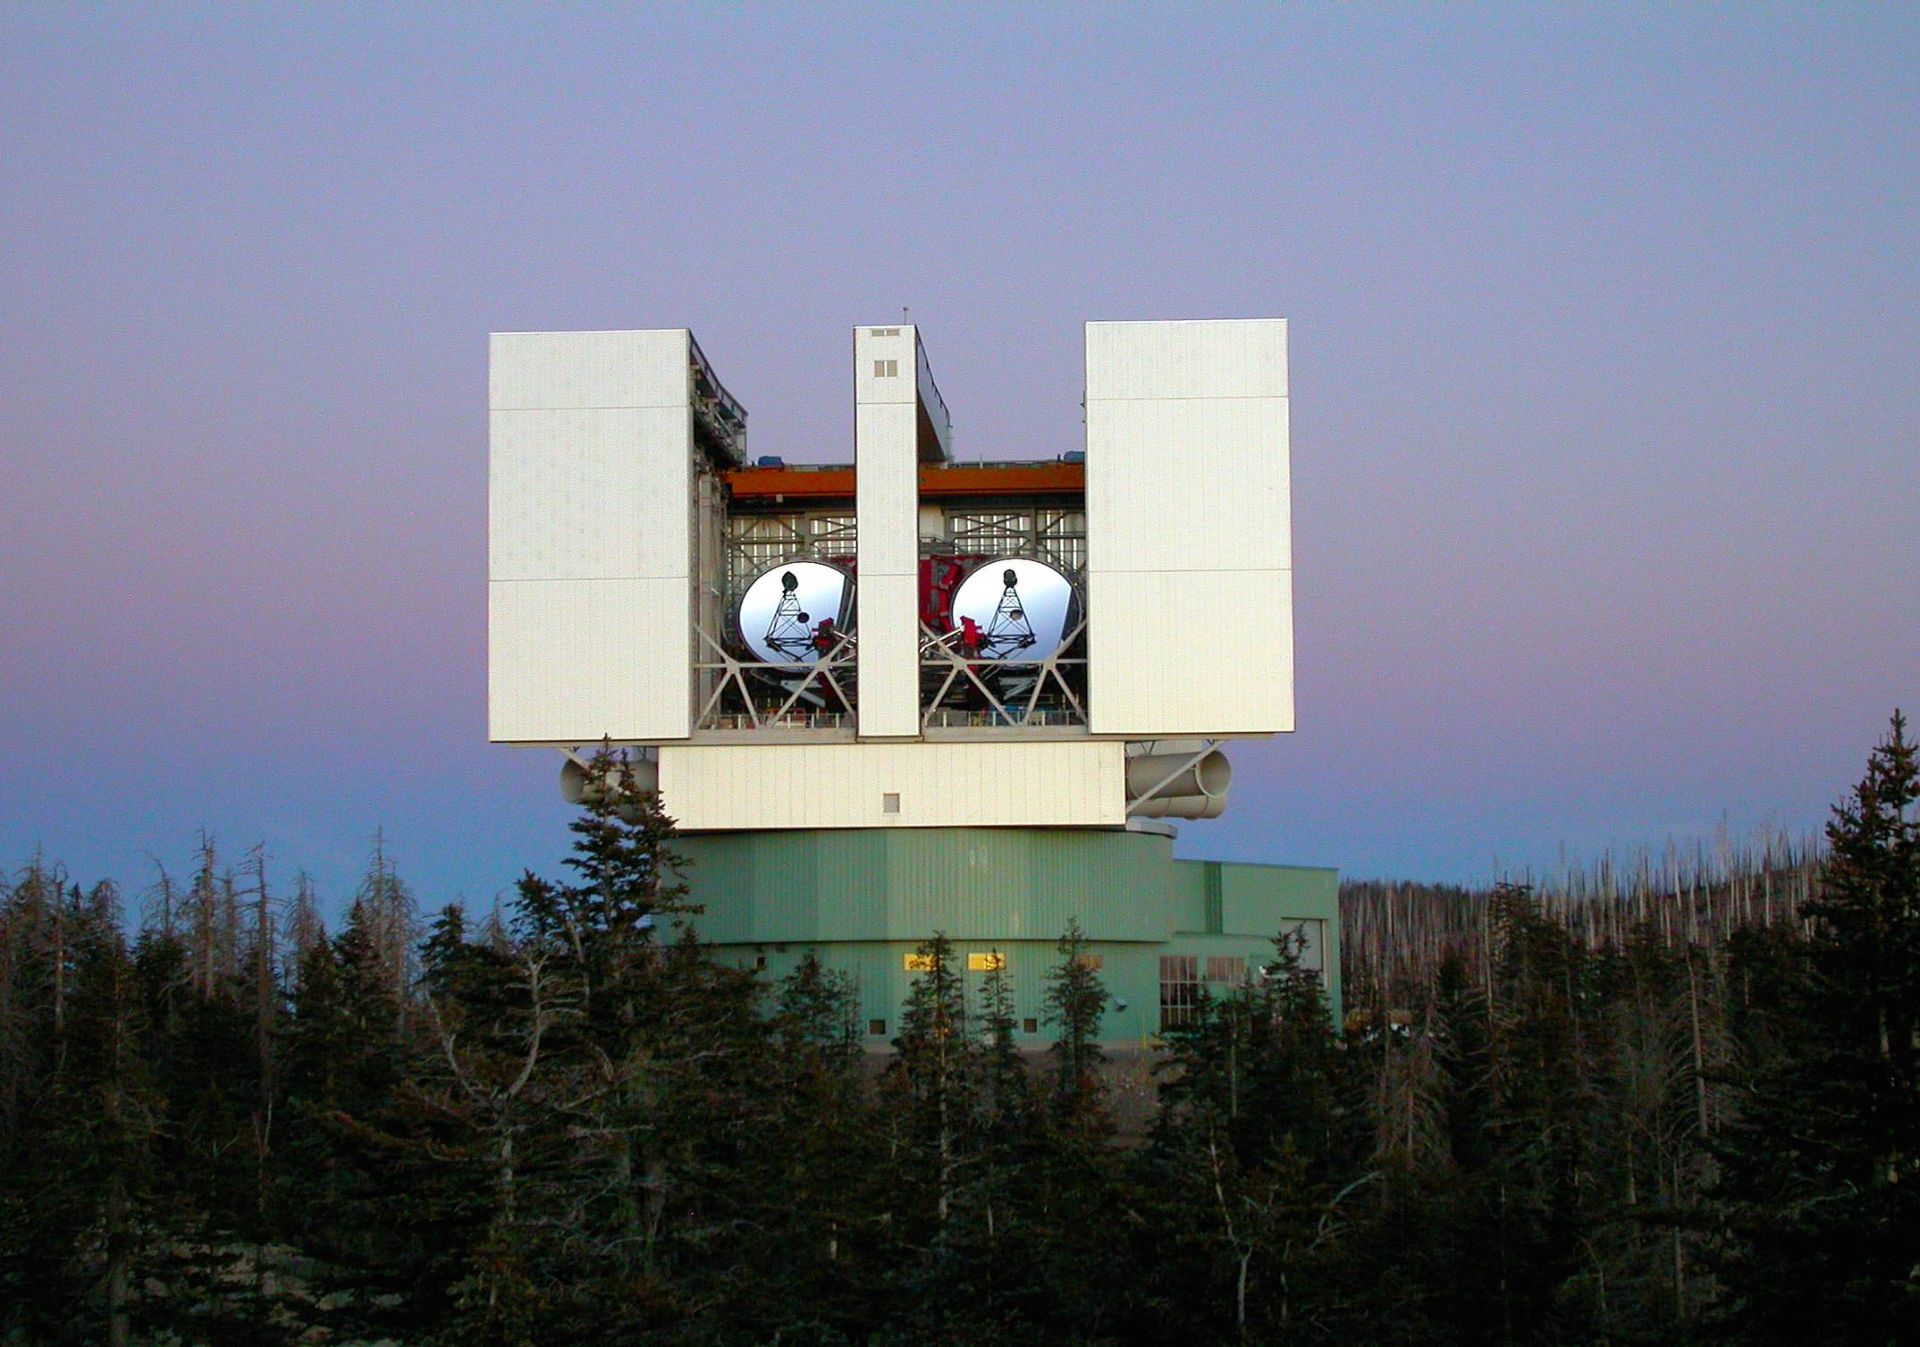 مرجع متخصصين ايران تلسكوپ بزرگ دوچشمي (LBT)